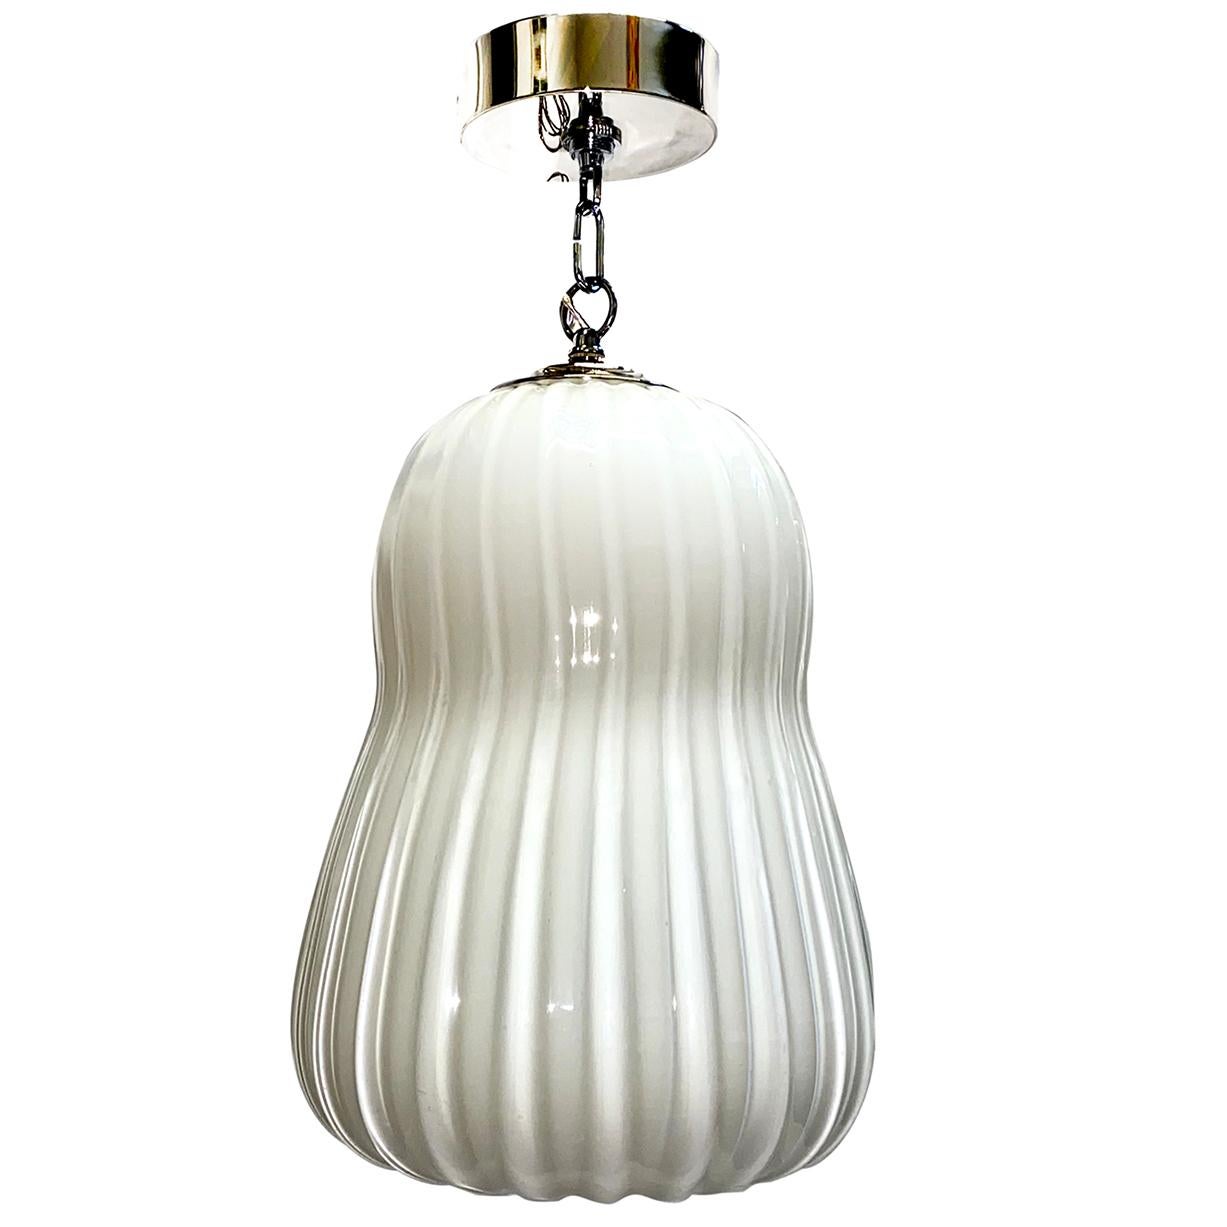 Un luminaire suspendu en verre de lait soufflé des années 1950 avec des lumières intérieures.

Mesures :
Diamètre 11